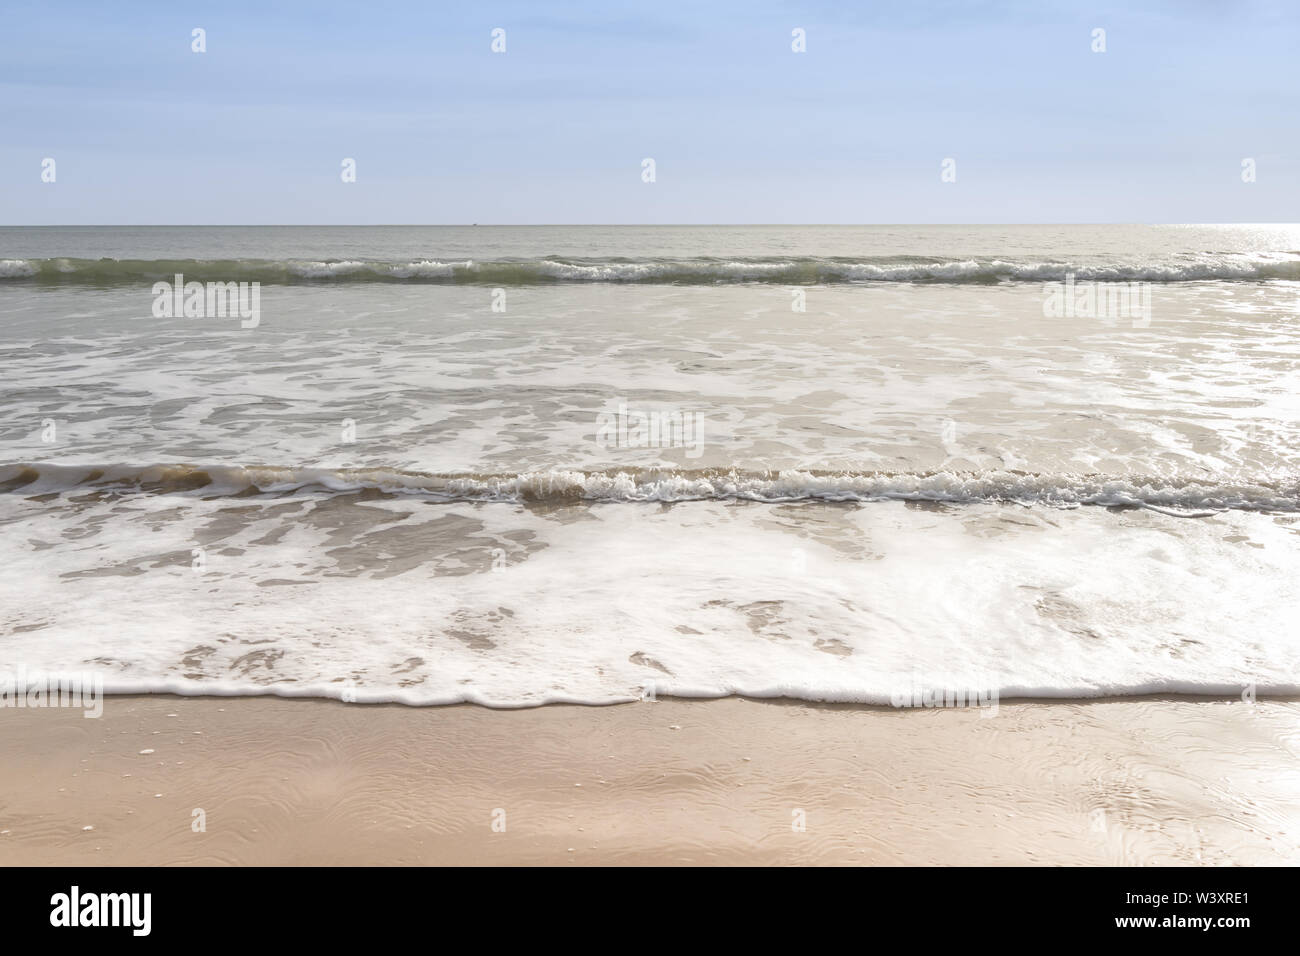 Clapotis des vagues doucement sur une plage de sable fin avec ciel bleu Banque D'Images